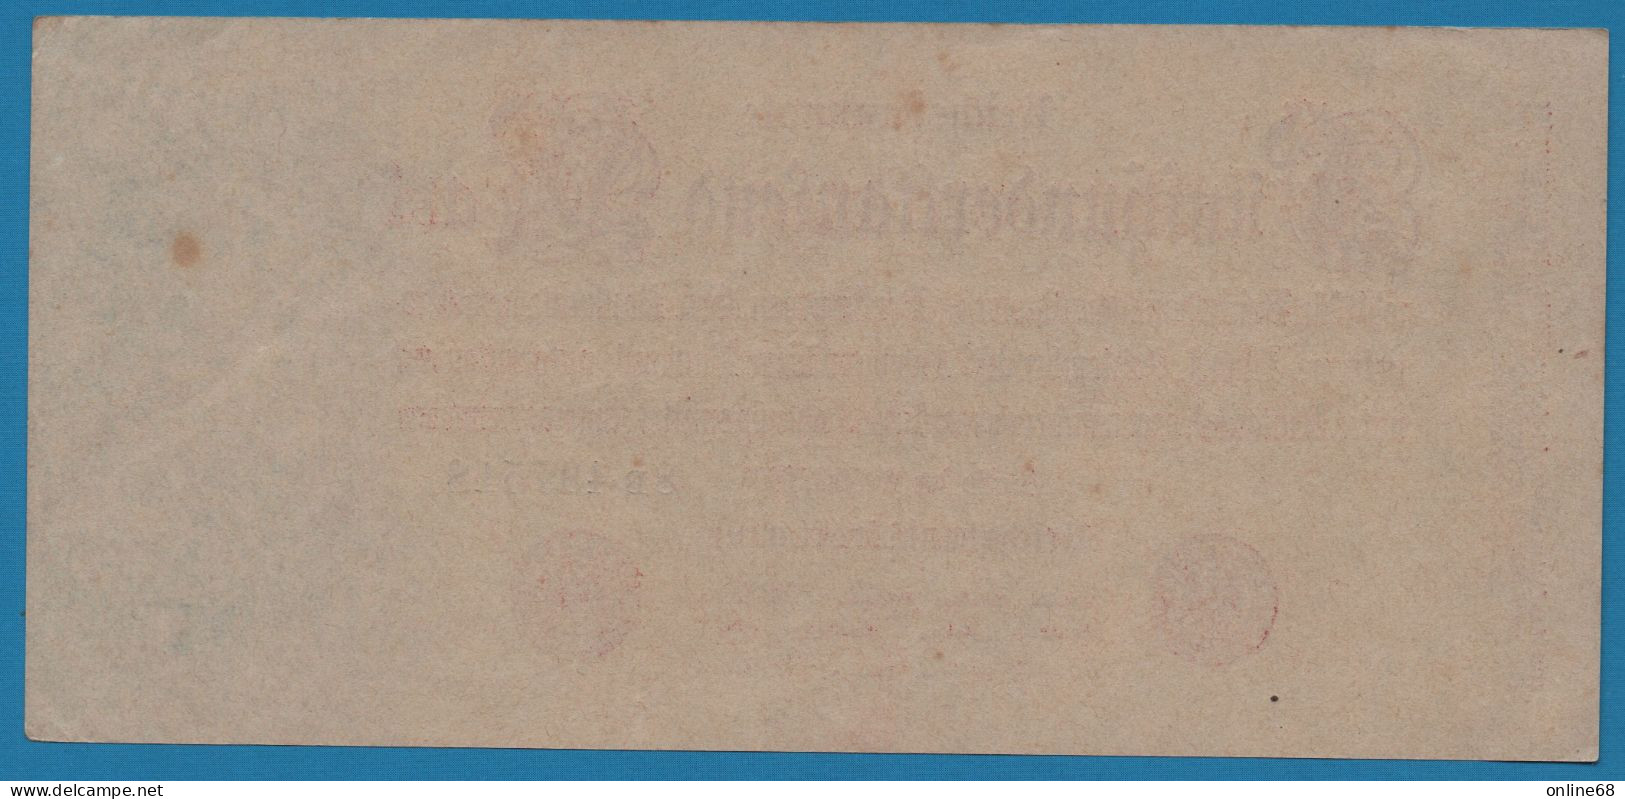 DEUTSCHES REICH 500.000 MARK 25.07.1923 # 8B.497518 P# 92 Reichsbank - 500.000 Mark